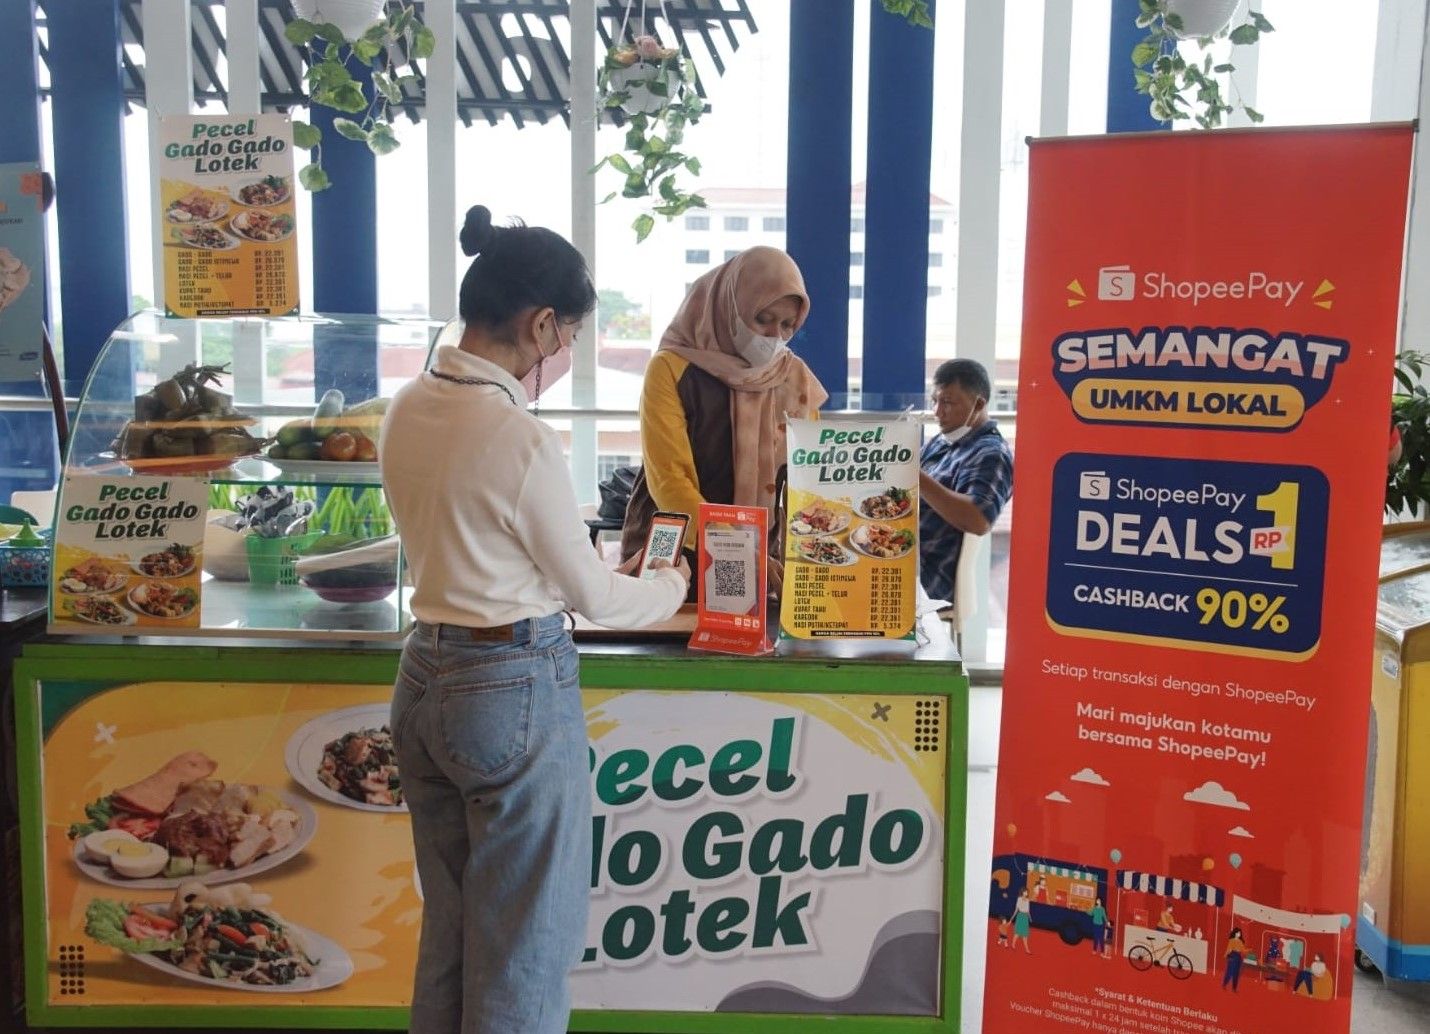 Seorang pengunjung sedang melakukan transaksi menggunakan ShopeePay sembari menikmati promo Cashback 90% di sentra kuliner Taste Food Malioboro